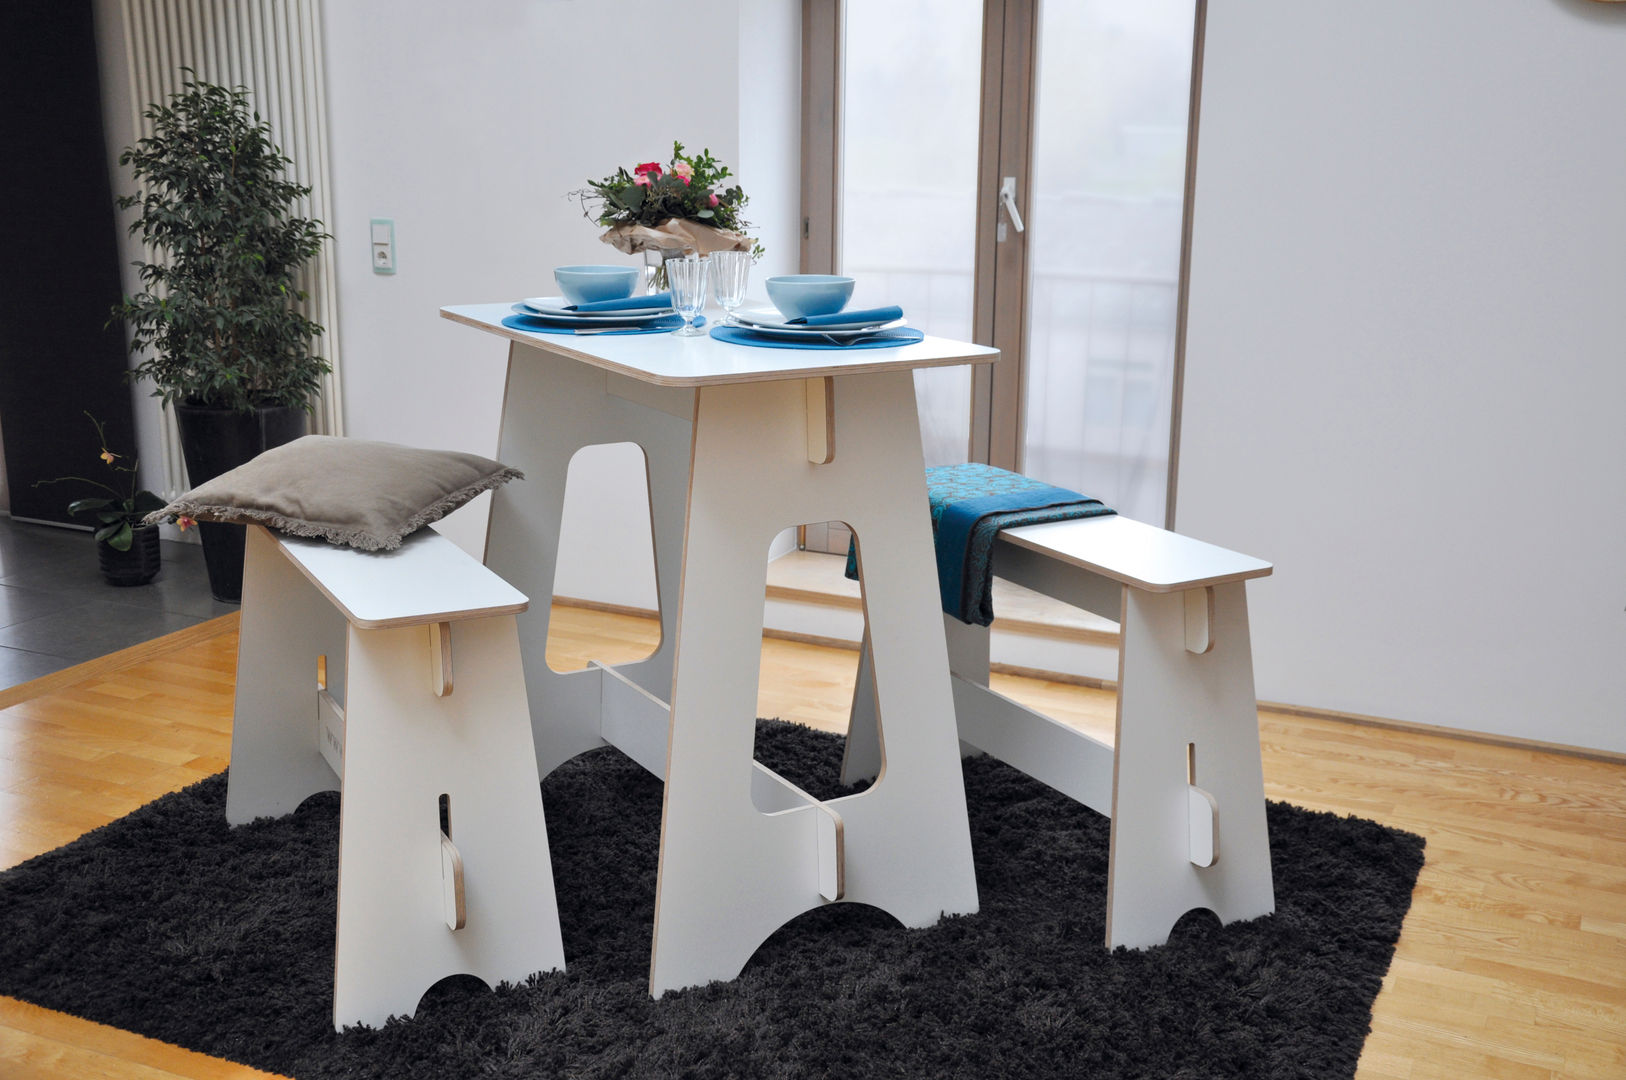 Steckmöbel Event-Tisch, das wunschmöbel das wunschmöbel 모던스타일 다이닝 룸 테이블